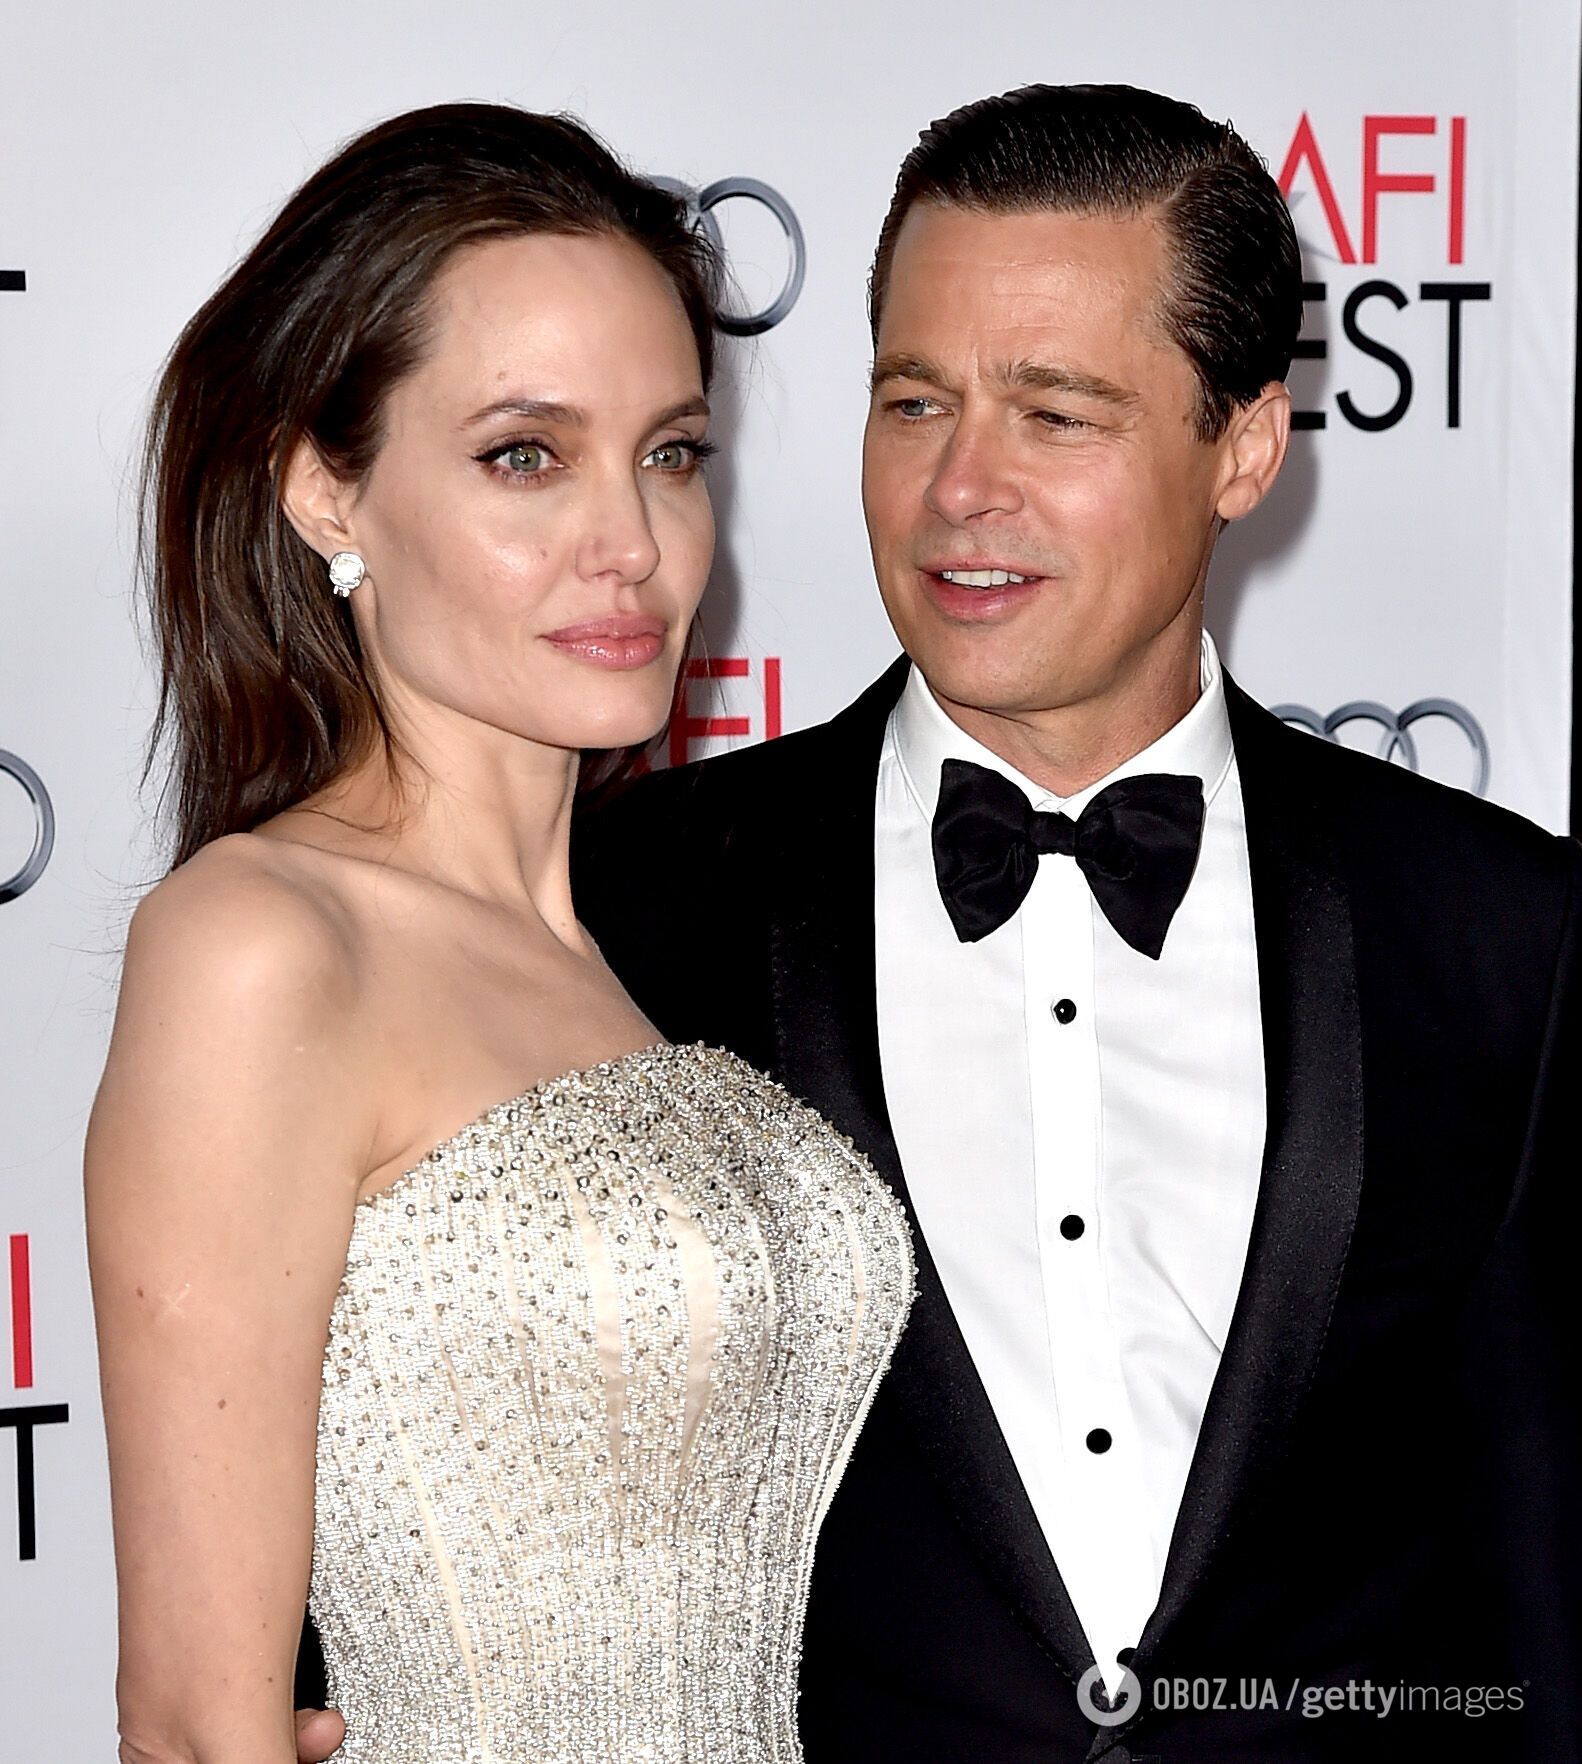 Анджелина Джоли обвинила Брэда Питта в физическом насилии над ней и их детьми. Что известно